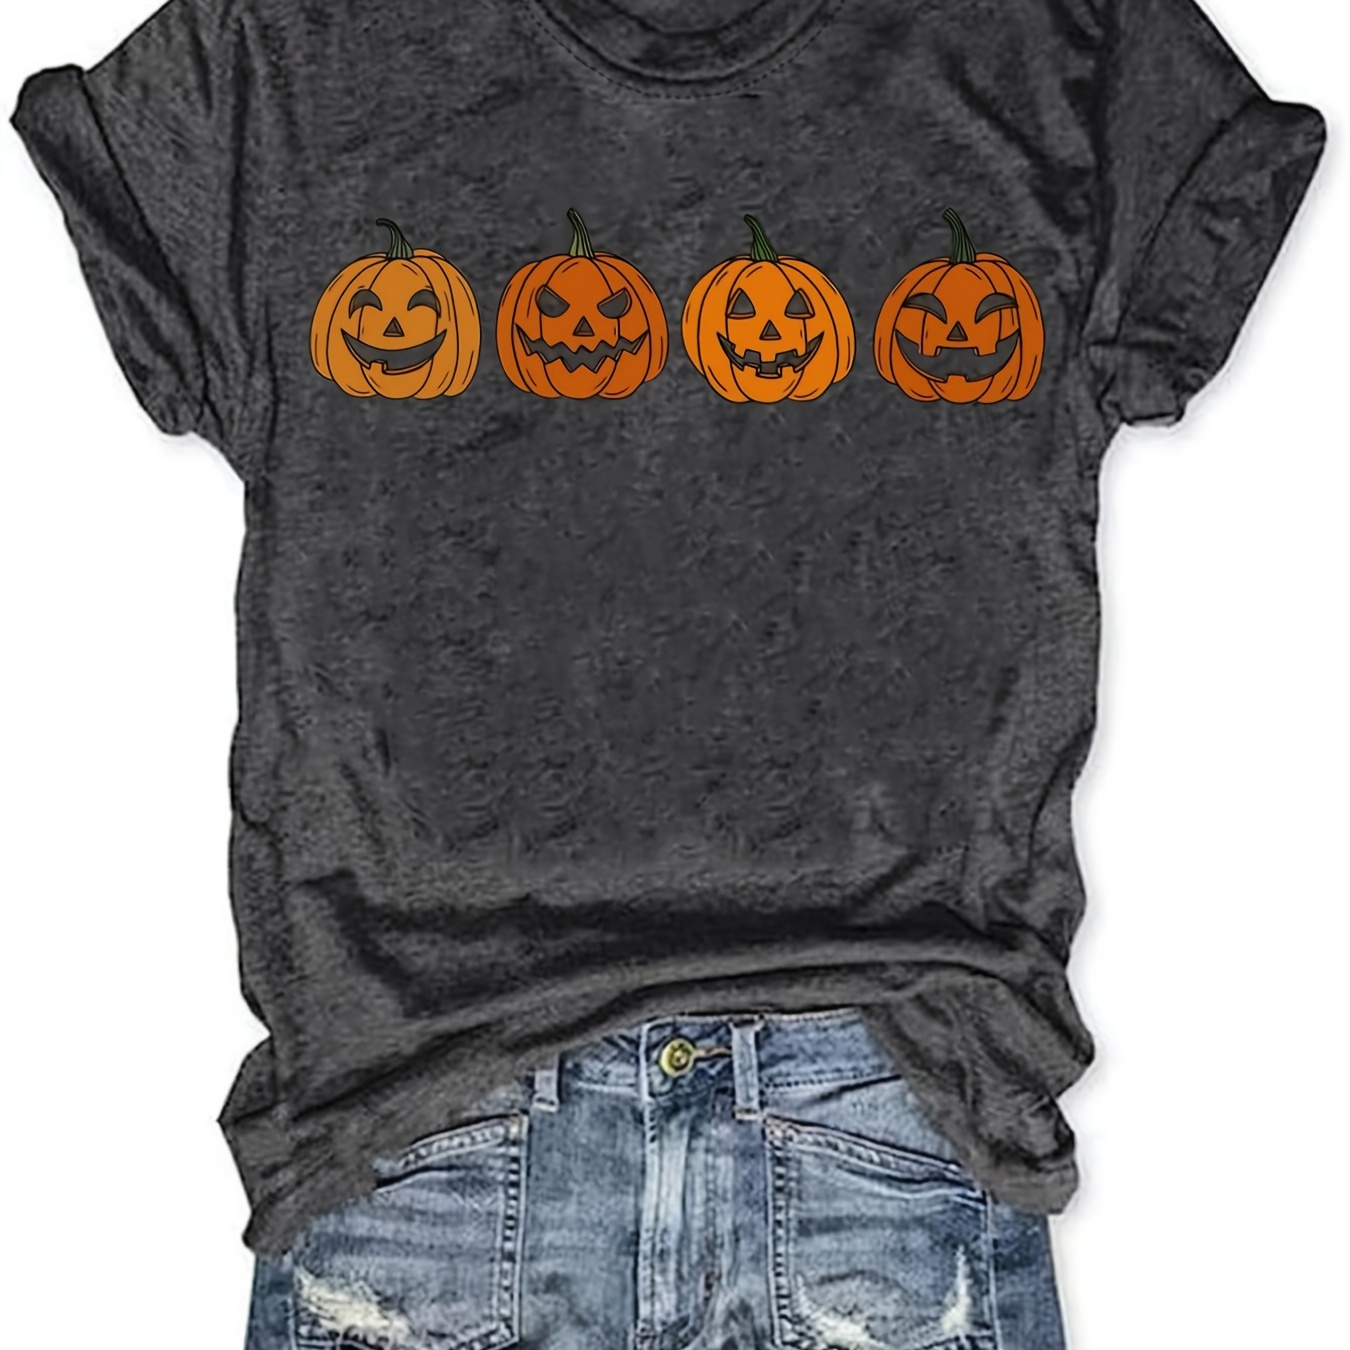 

Halloween Pumpkin Print T-shirt, Casual Crew Neck Short Sleeve T-shirt, Women's Clothing